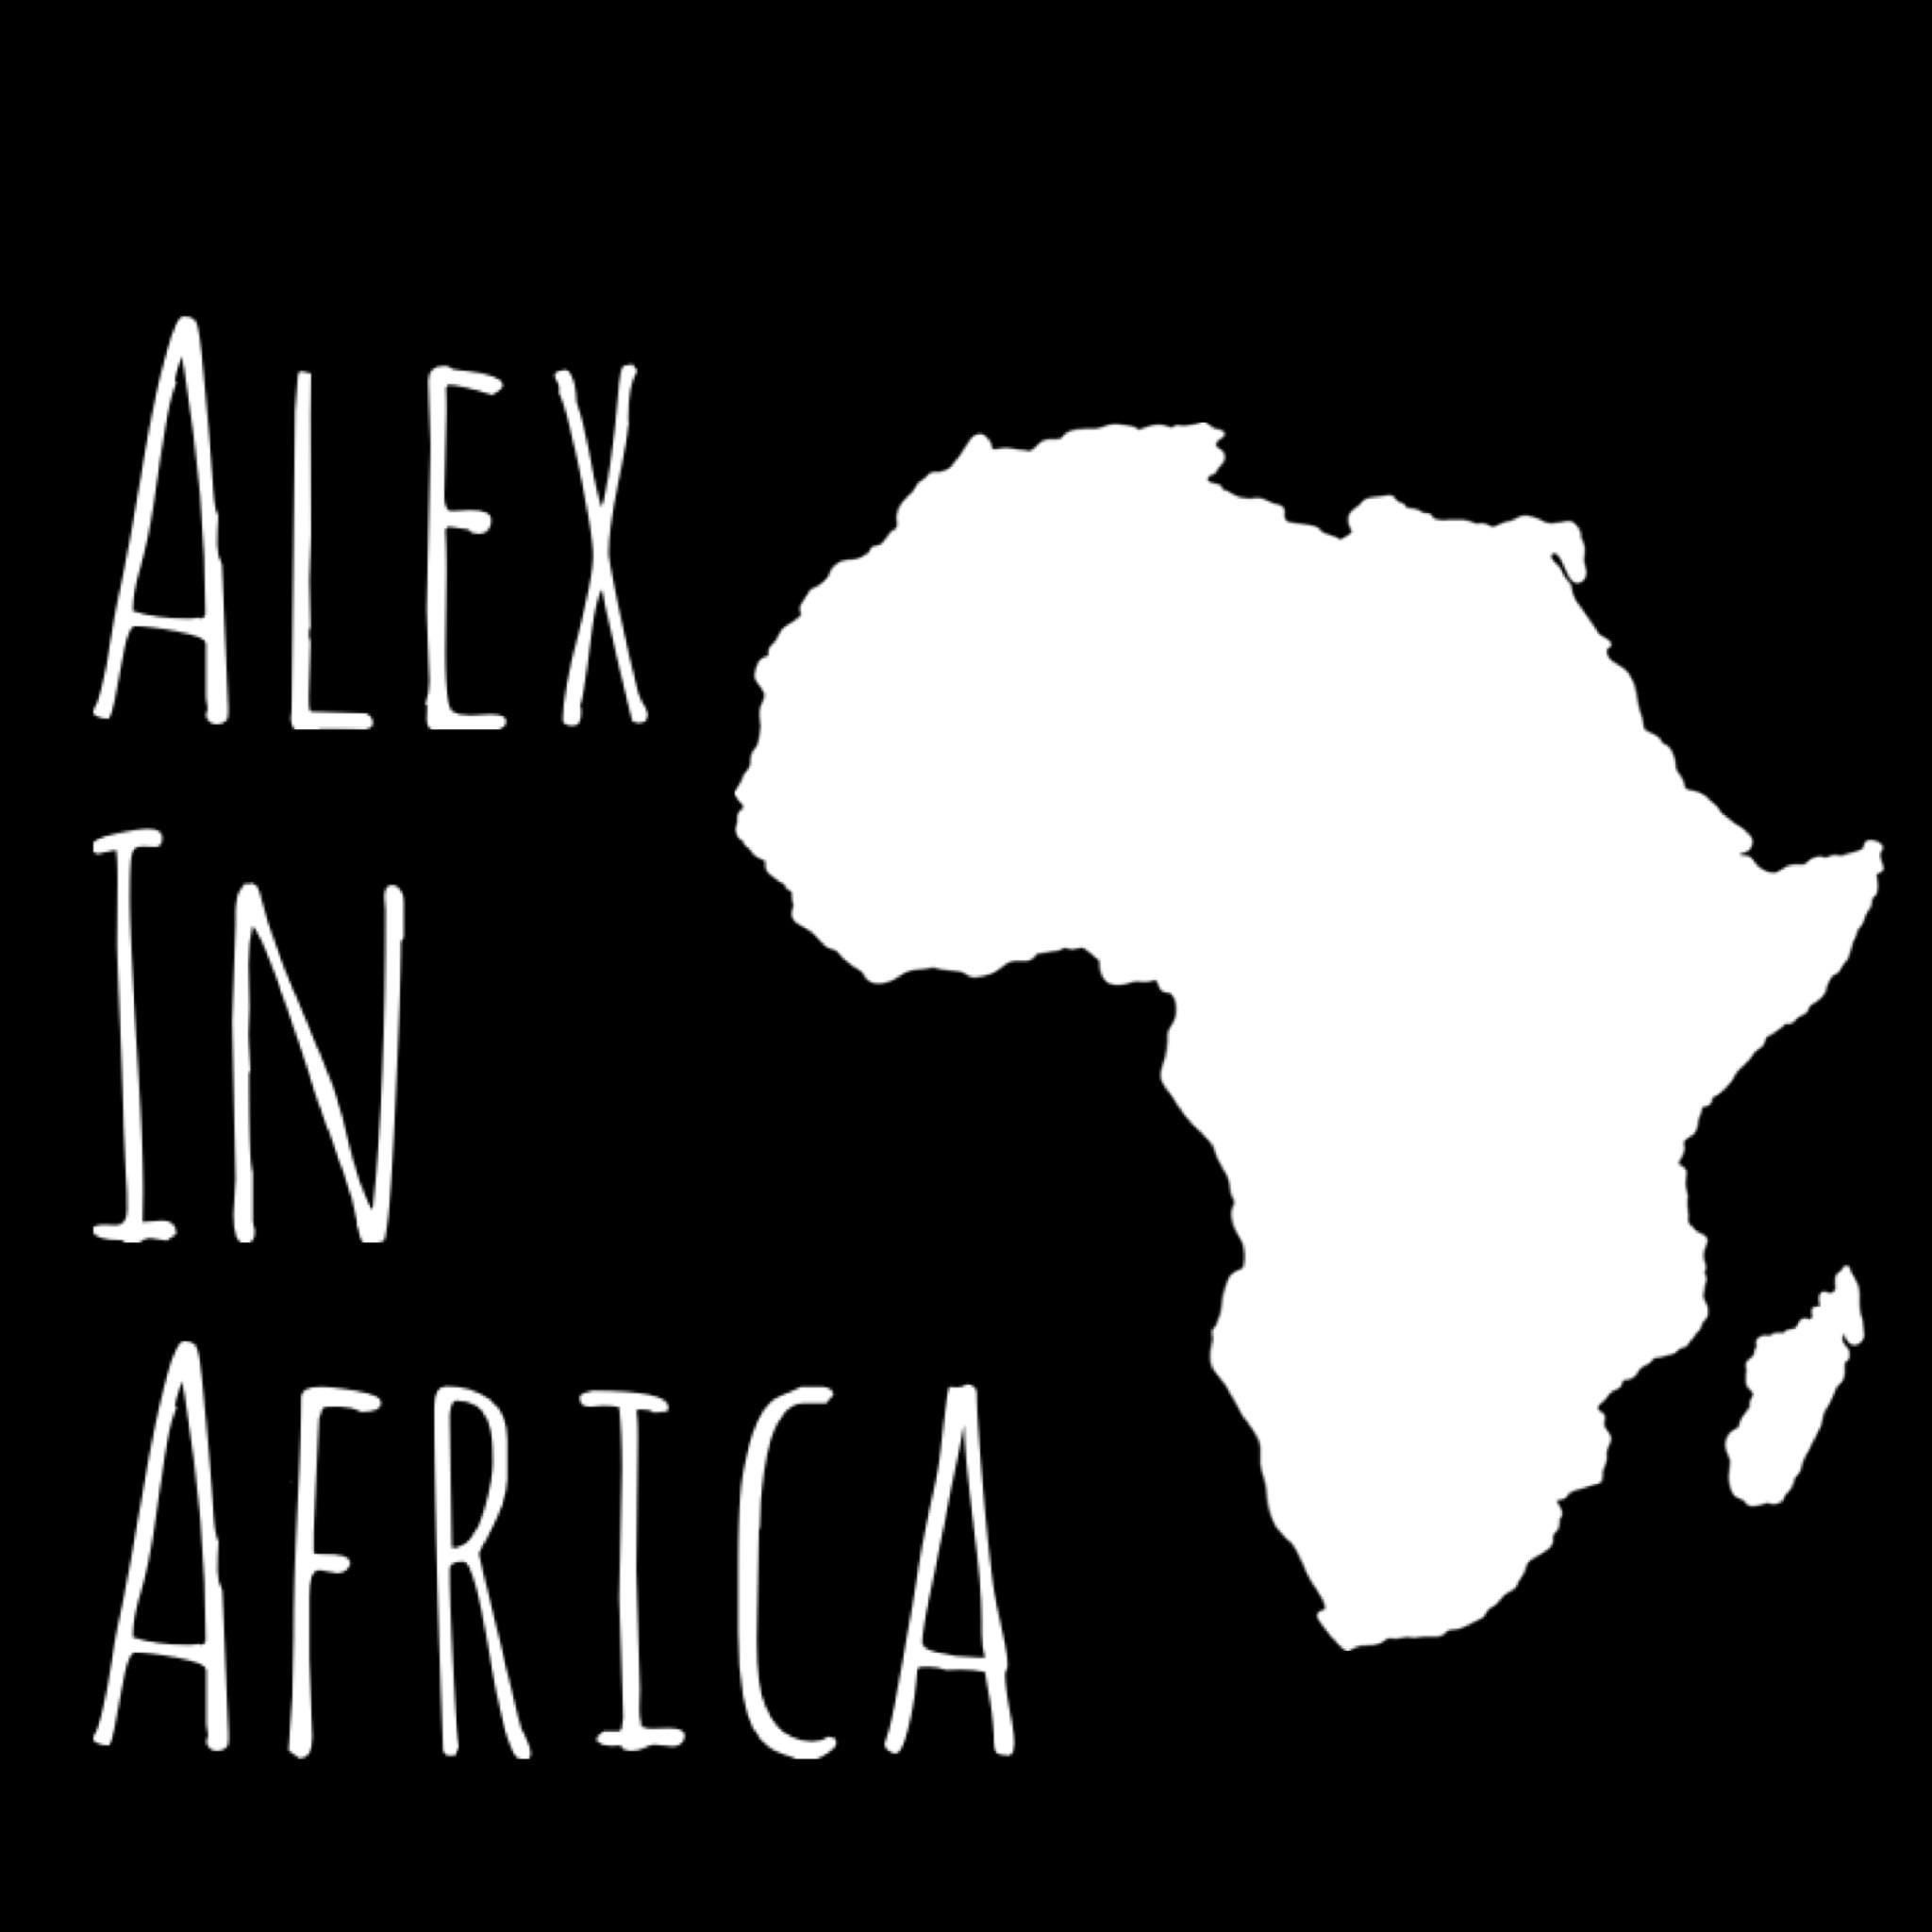 Alex in Africa